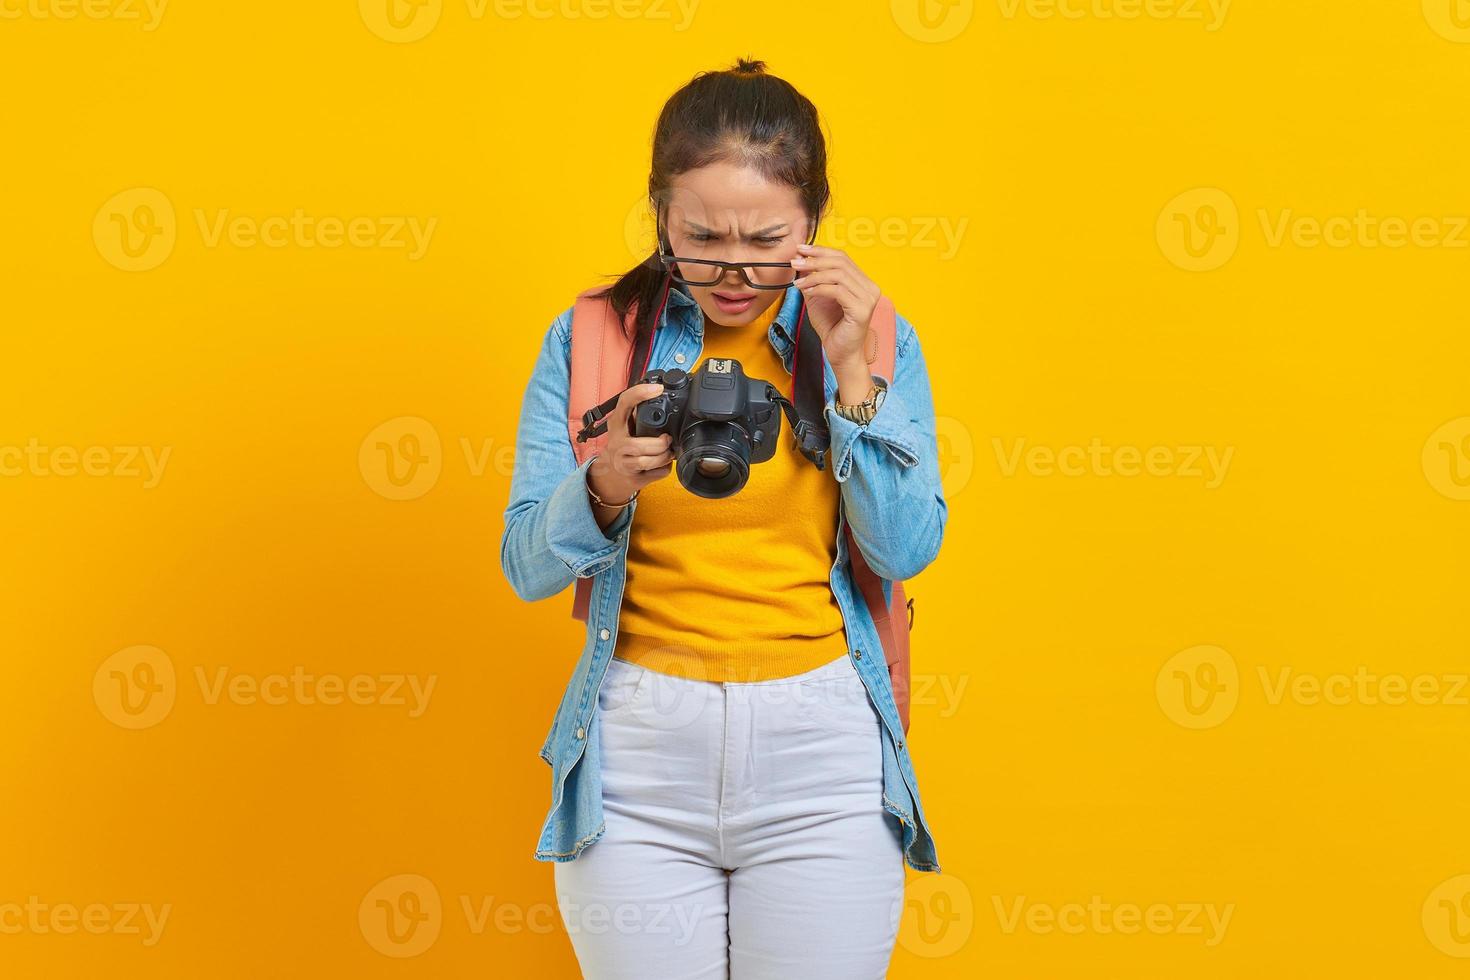 retrato de una joven asiática sorprendida mirando una foto en una cámara aislada de fondo amarillo. pasajero que viaja los fines de semana. concepto de viaje de vuelo aéreo